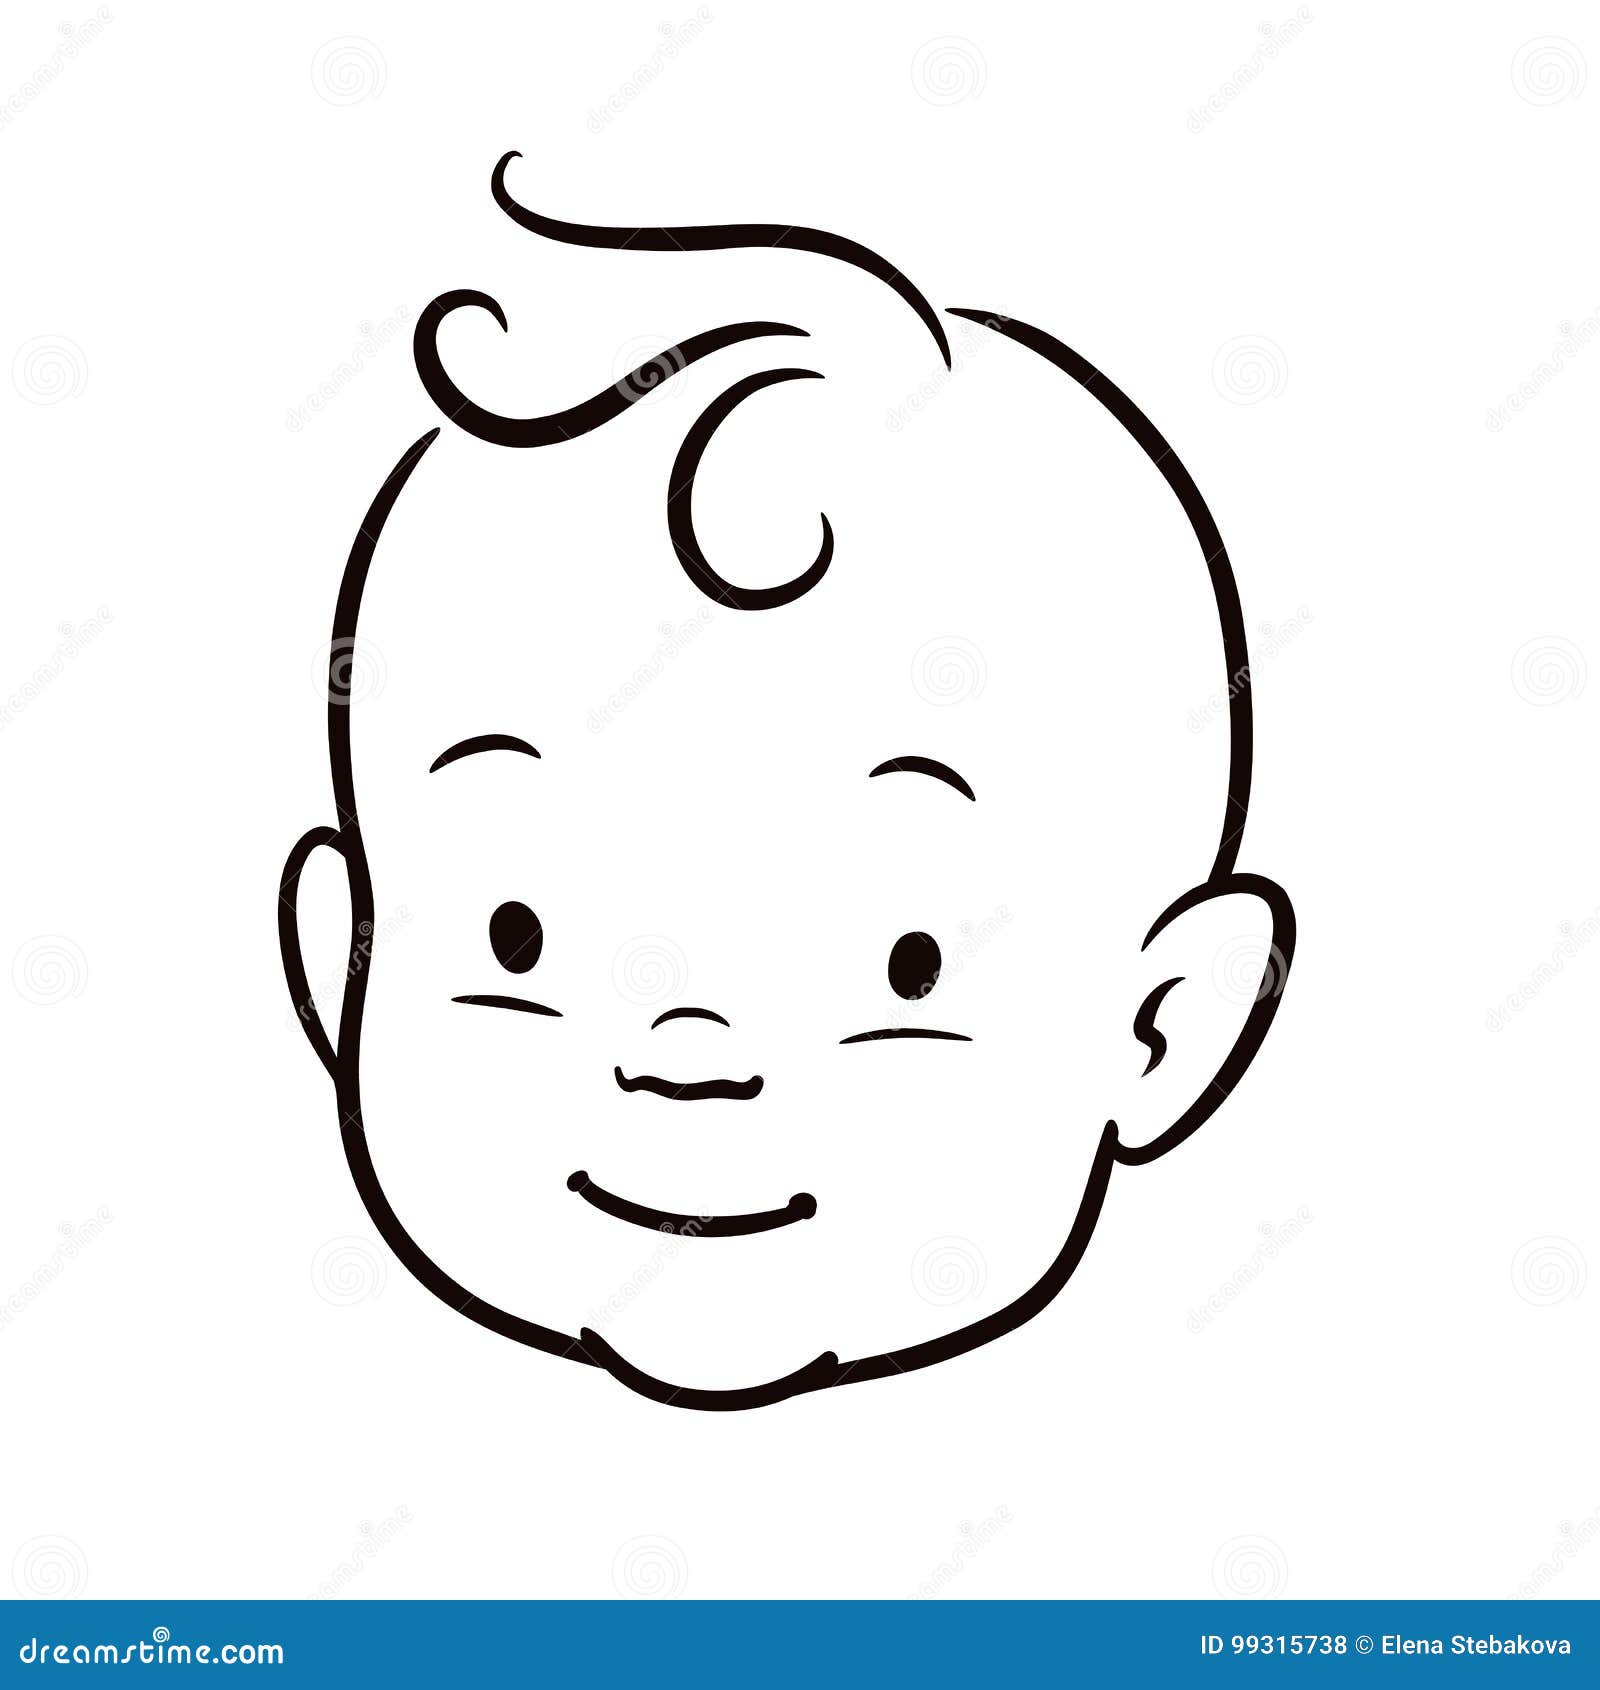 Ilustração De Desenhos Animados De Bebê Fofo PNG , Clipart De Bebê